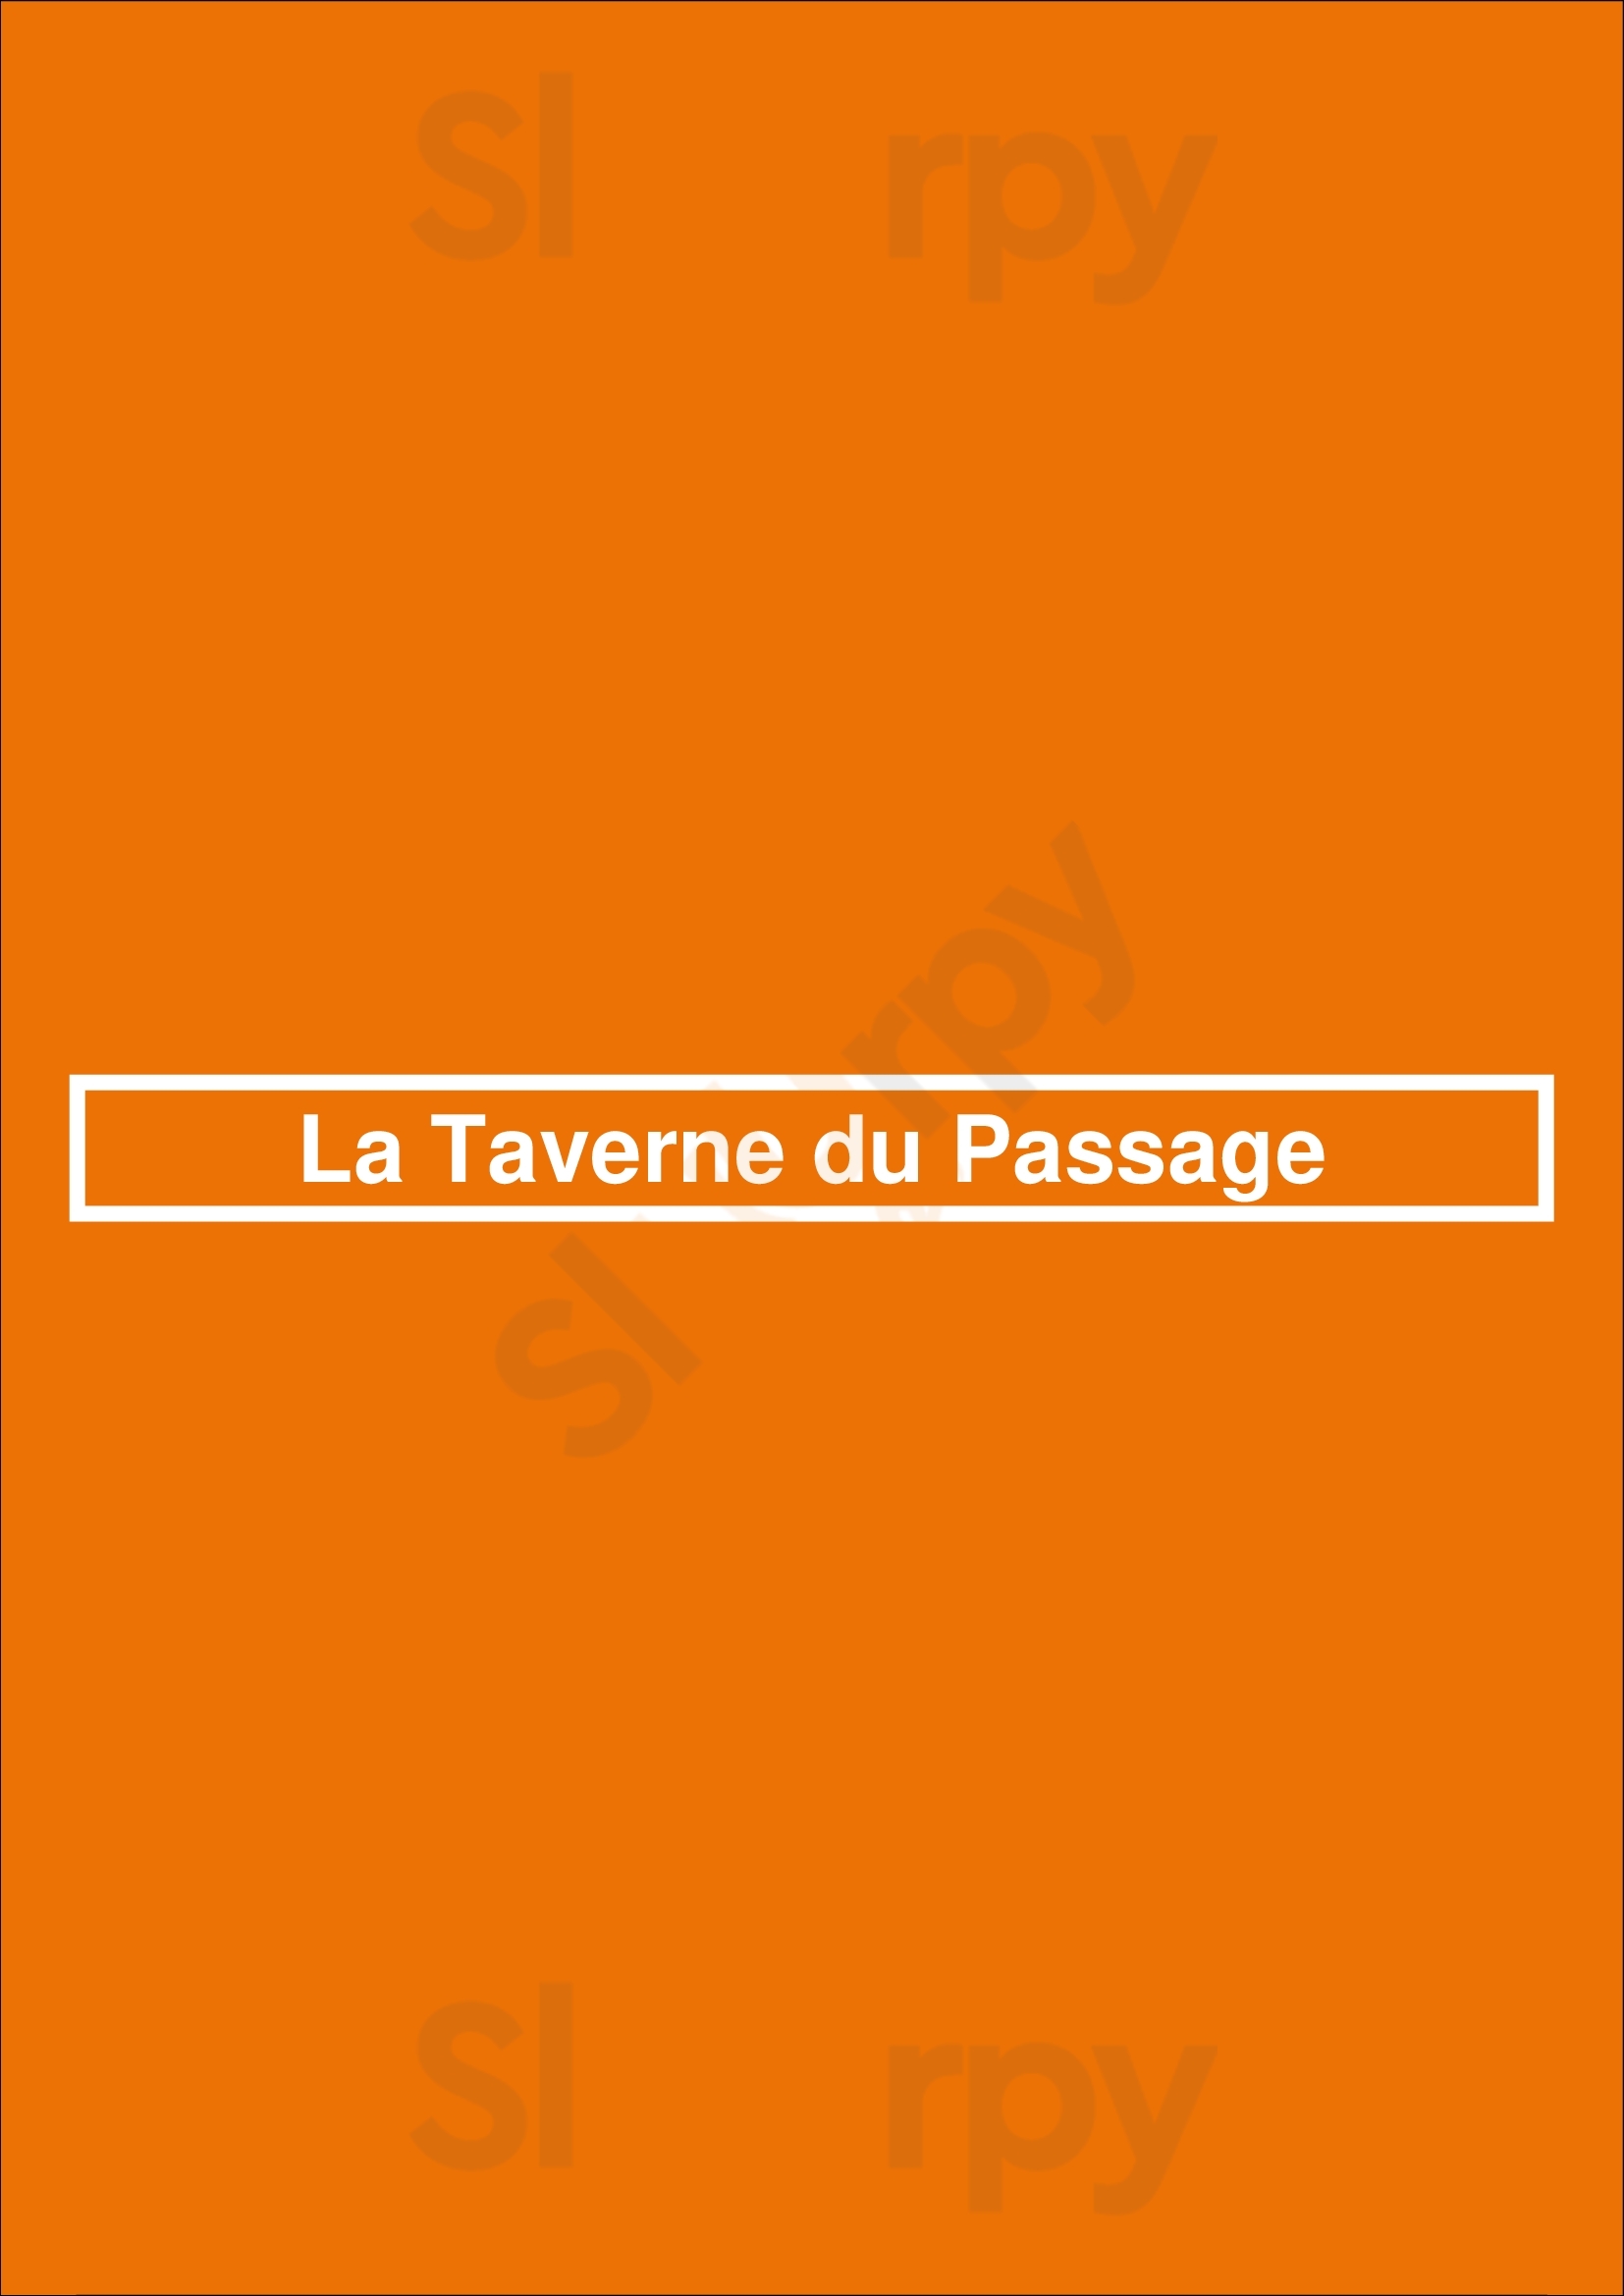 La Taverne Du Passage Bruxelles Menu - 1